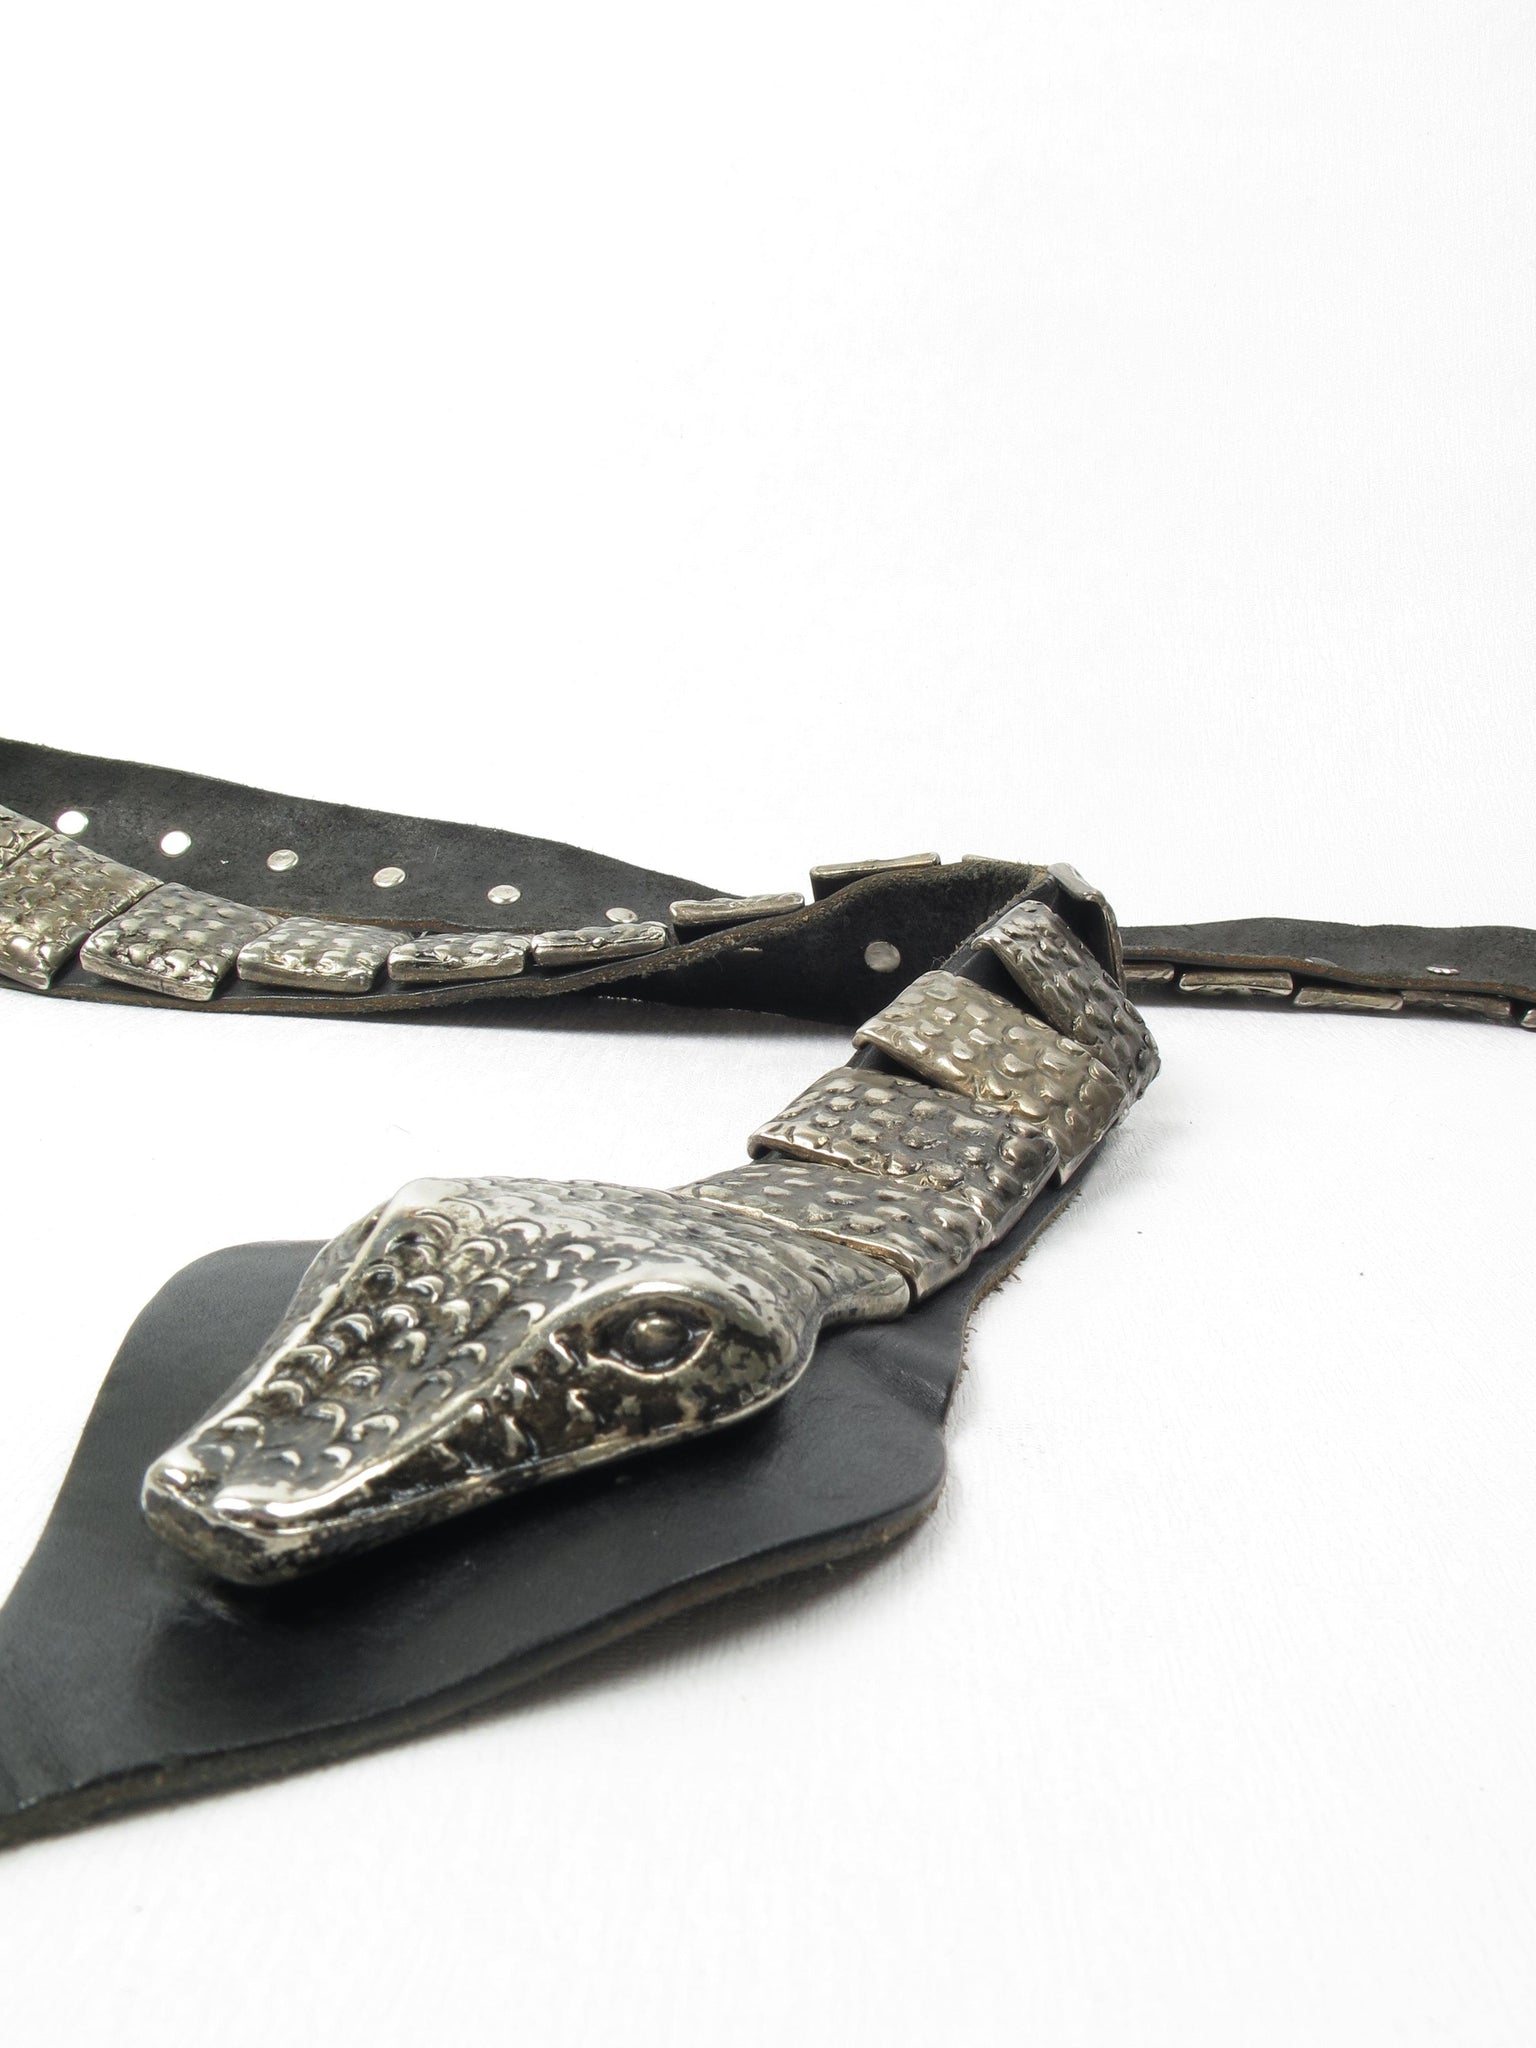 Leather & Metal Vintage Snake Belt M - The Harlequin